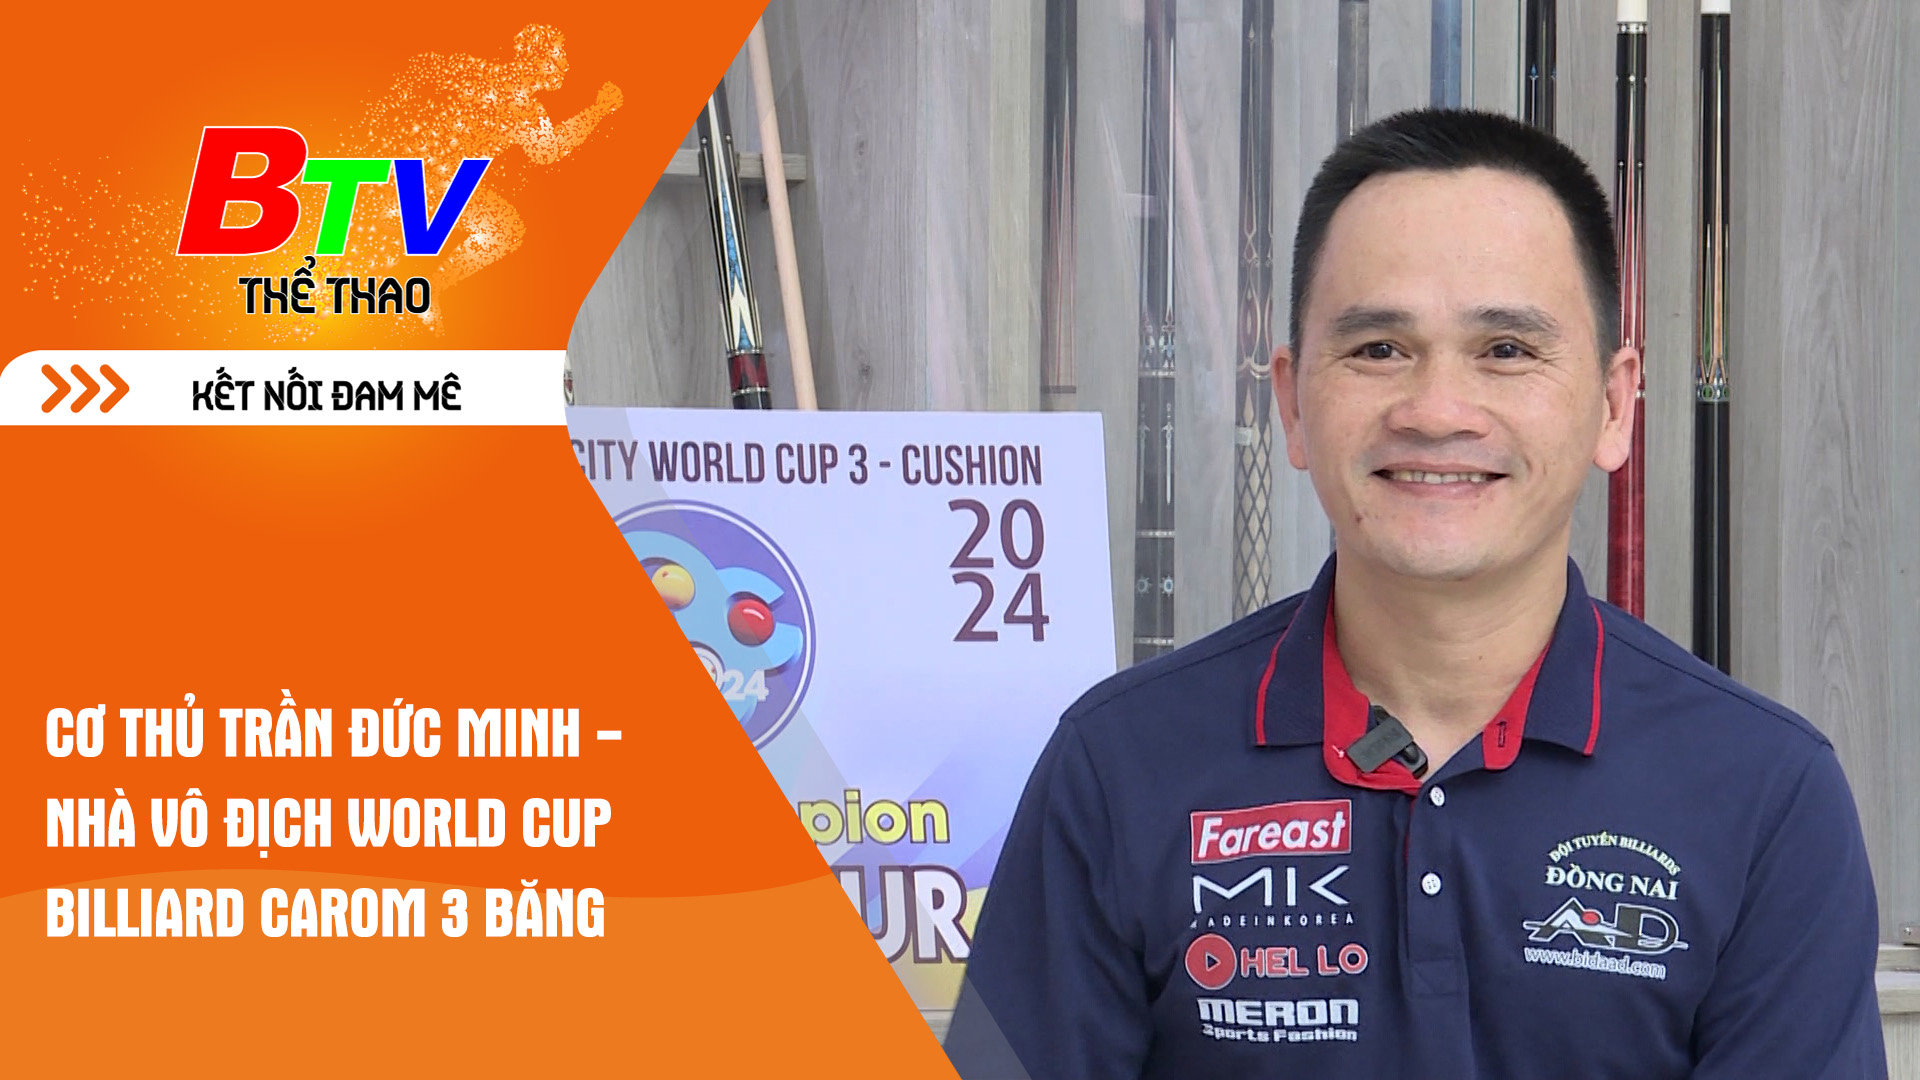 Cơ thủ Trần Đức Minh - Nhà vô địch World Cup Billiard Carom 3 băng